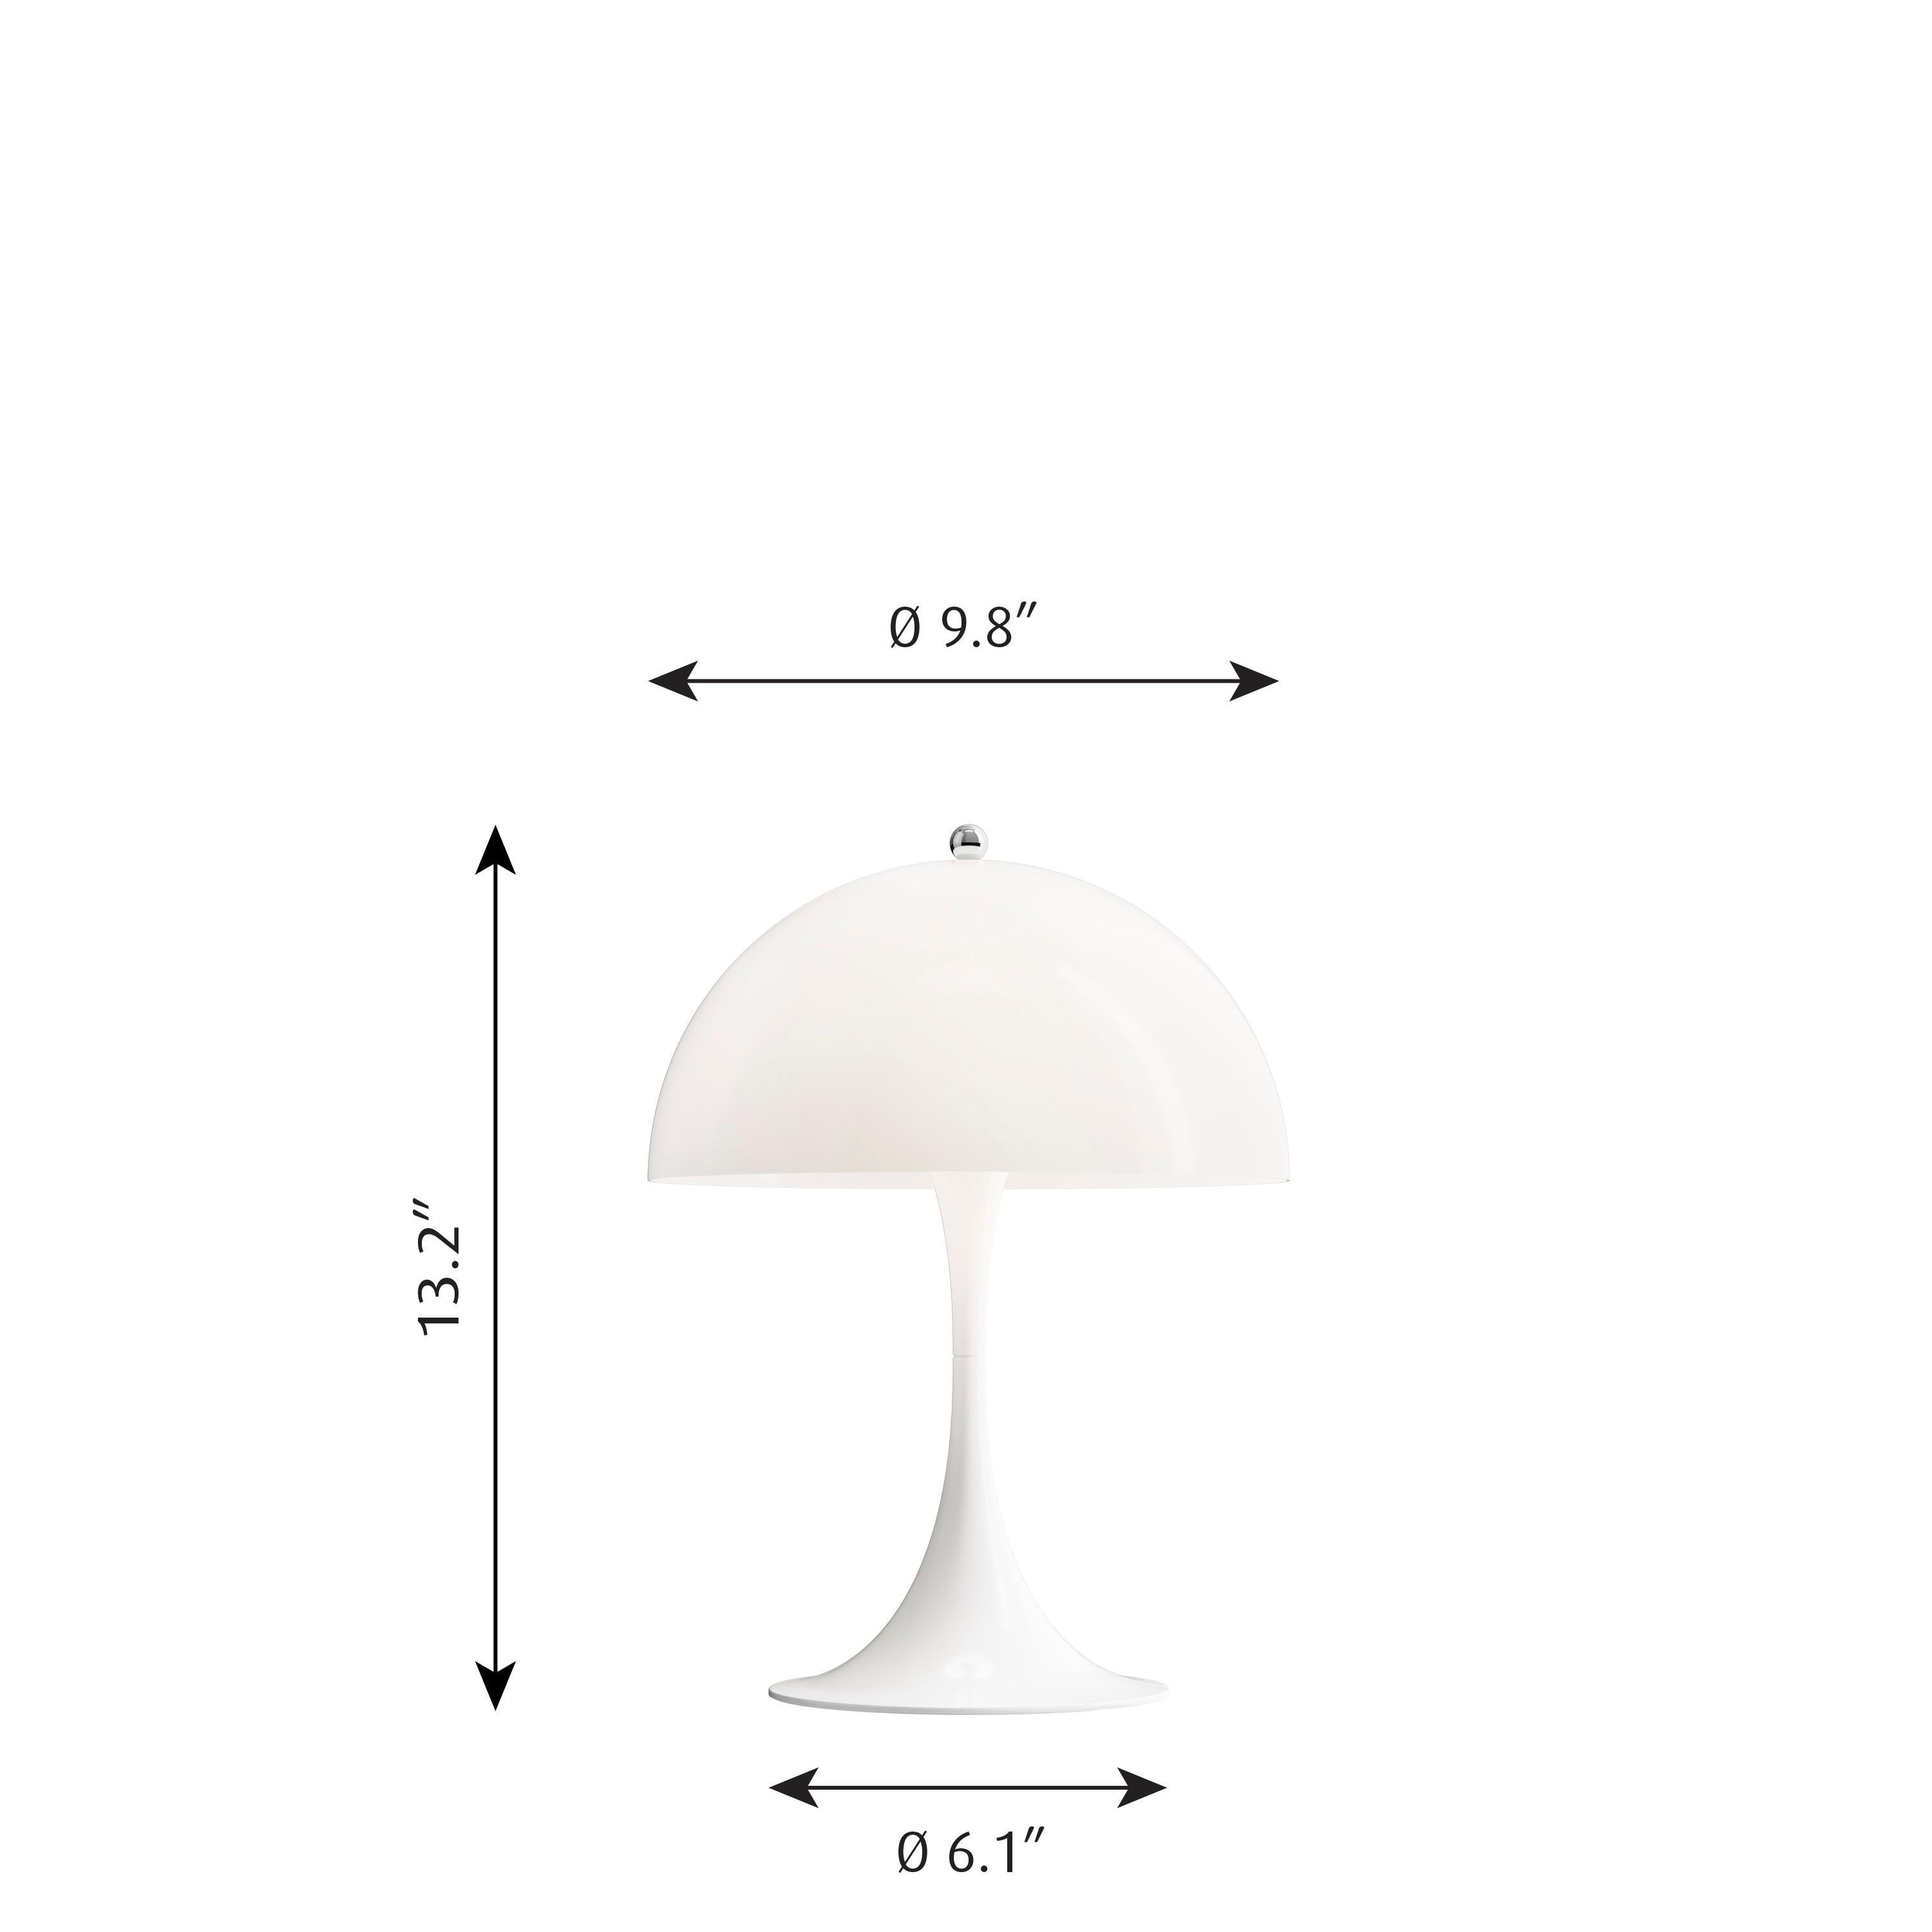 Lampe de table LED 'Panthella 250' de Verner Panton en blanc pour Louis Poulsen. 

La lampe de table LED 'Panthella 250' utilise les dessins originaux de Verner Panton pour produire une lampe de forme organique avec un abat-jour en métal. La lampe